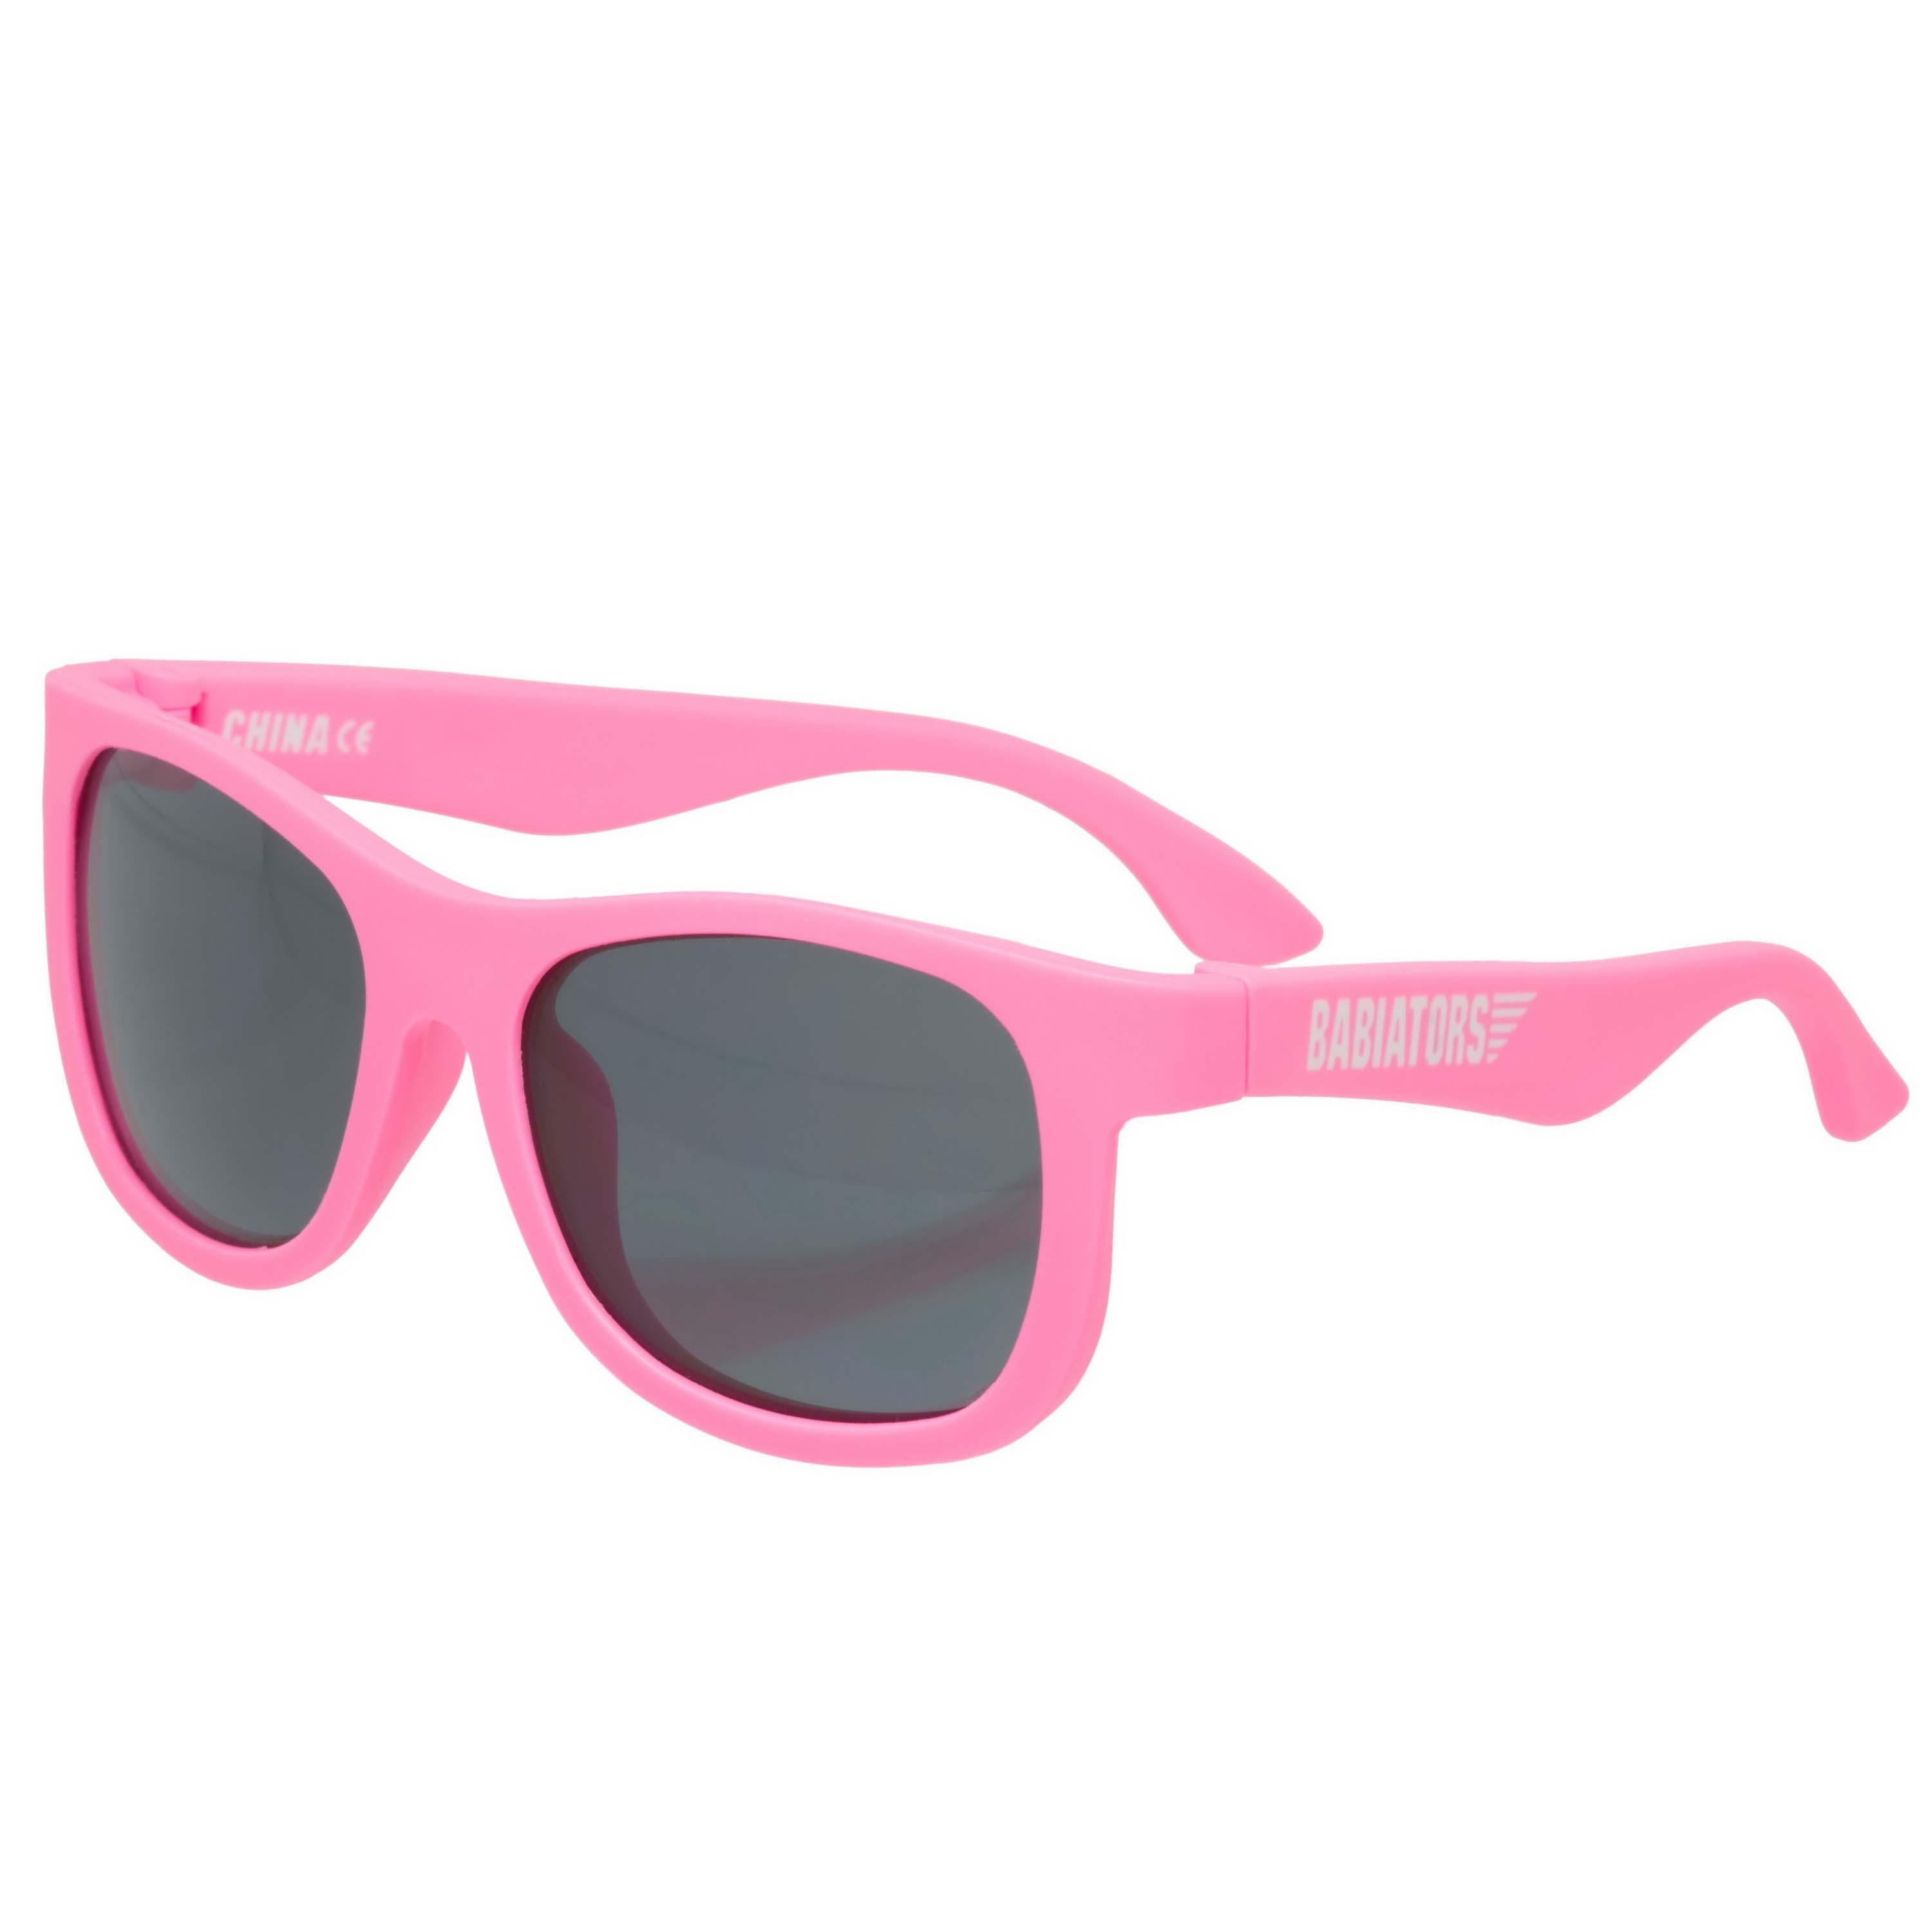 Солнцезащитные очки - Babiators Original Navigator. Розовые помыслы/Think Pink. Classic  